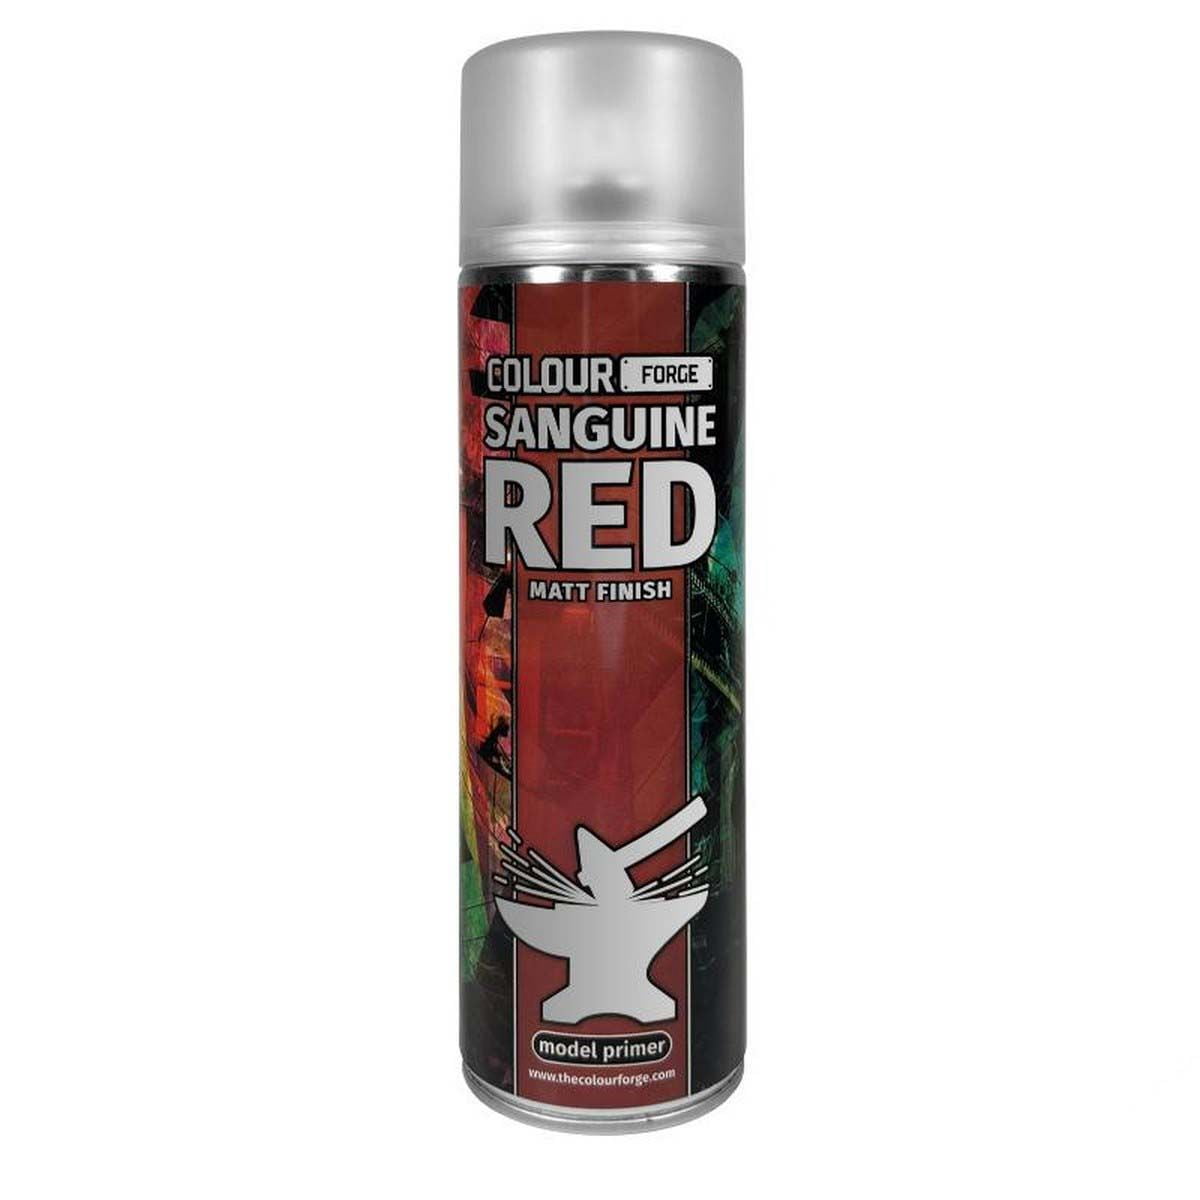 Colour Forge Sanguine Red Spray